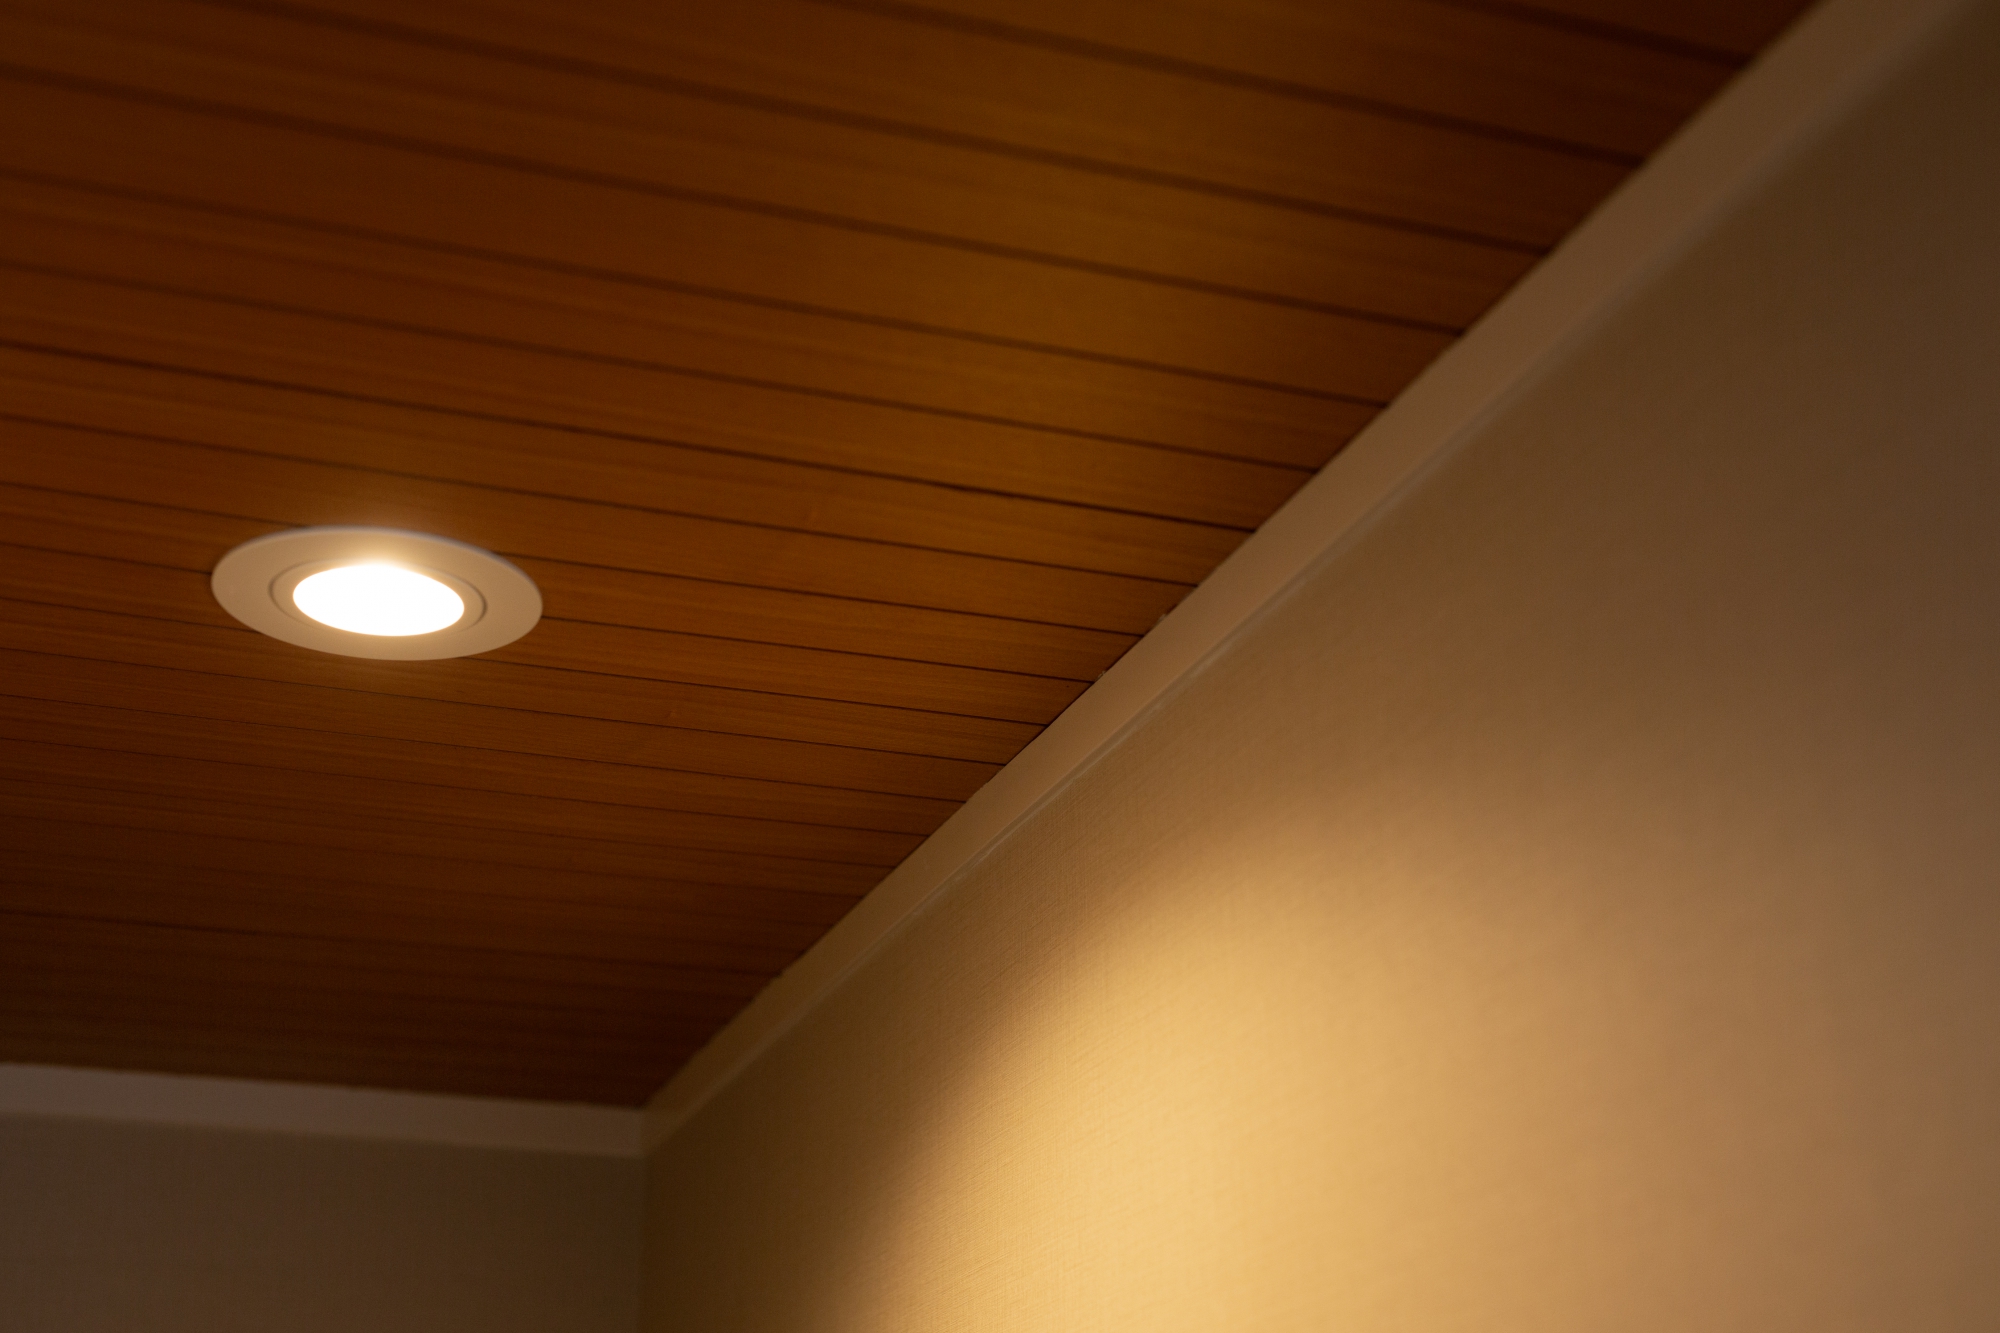 After
木を使った天井は和モダンな雰囲気に。